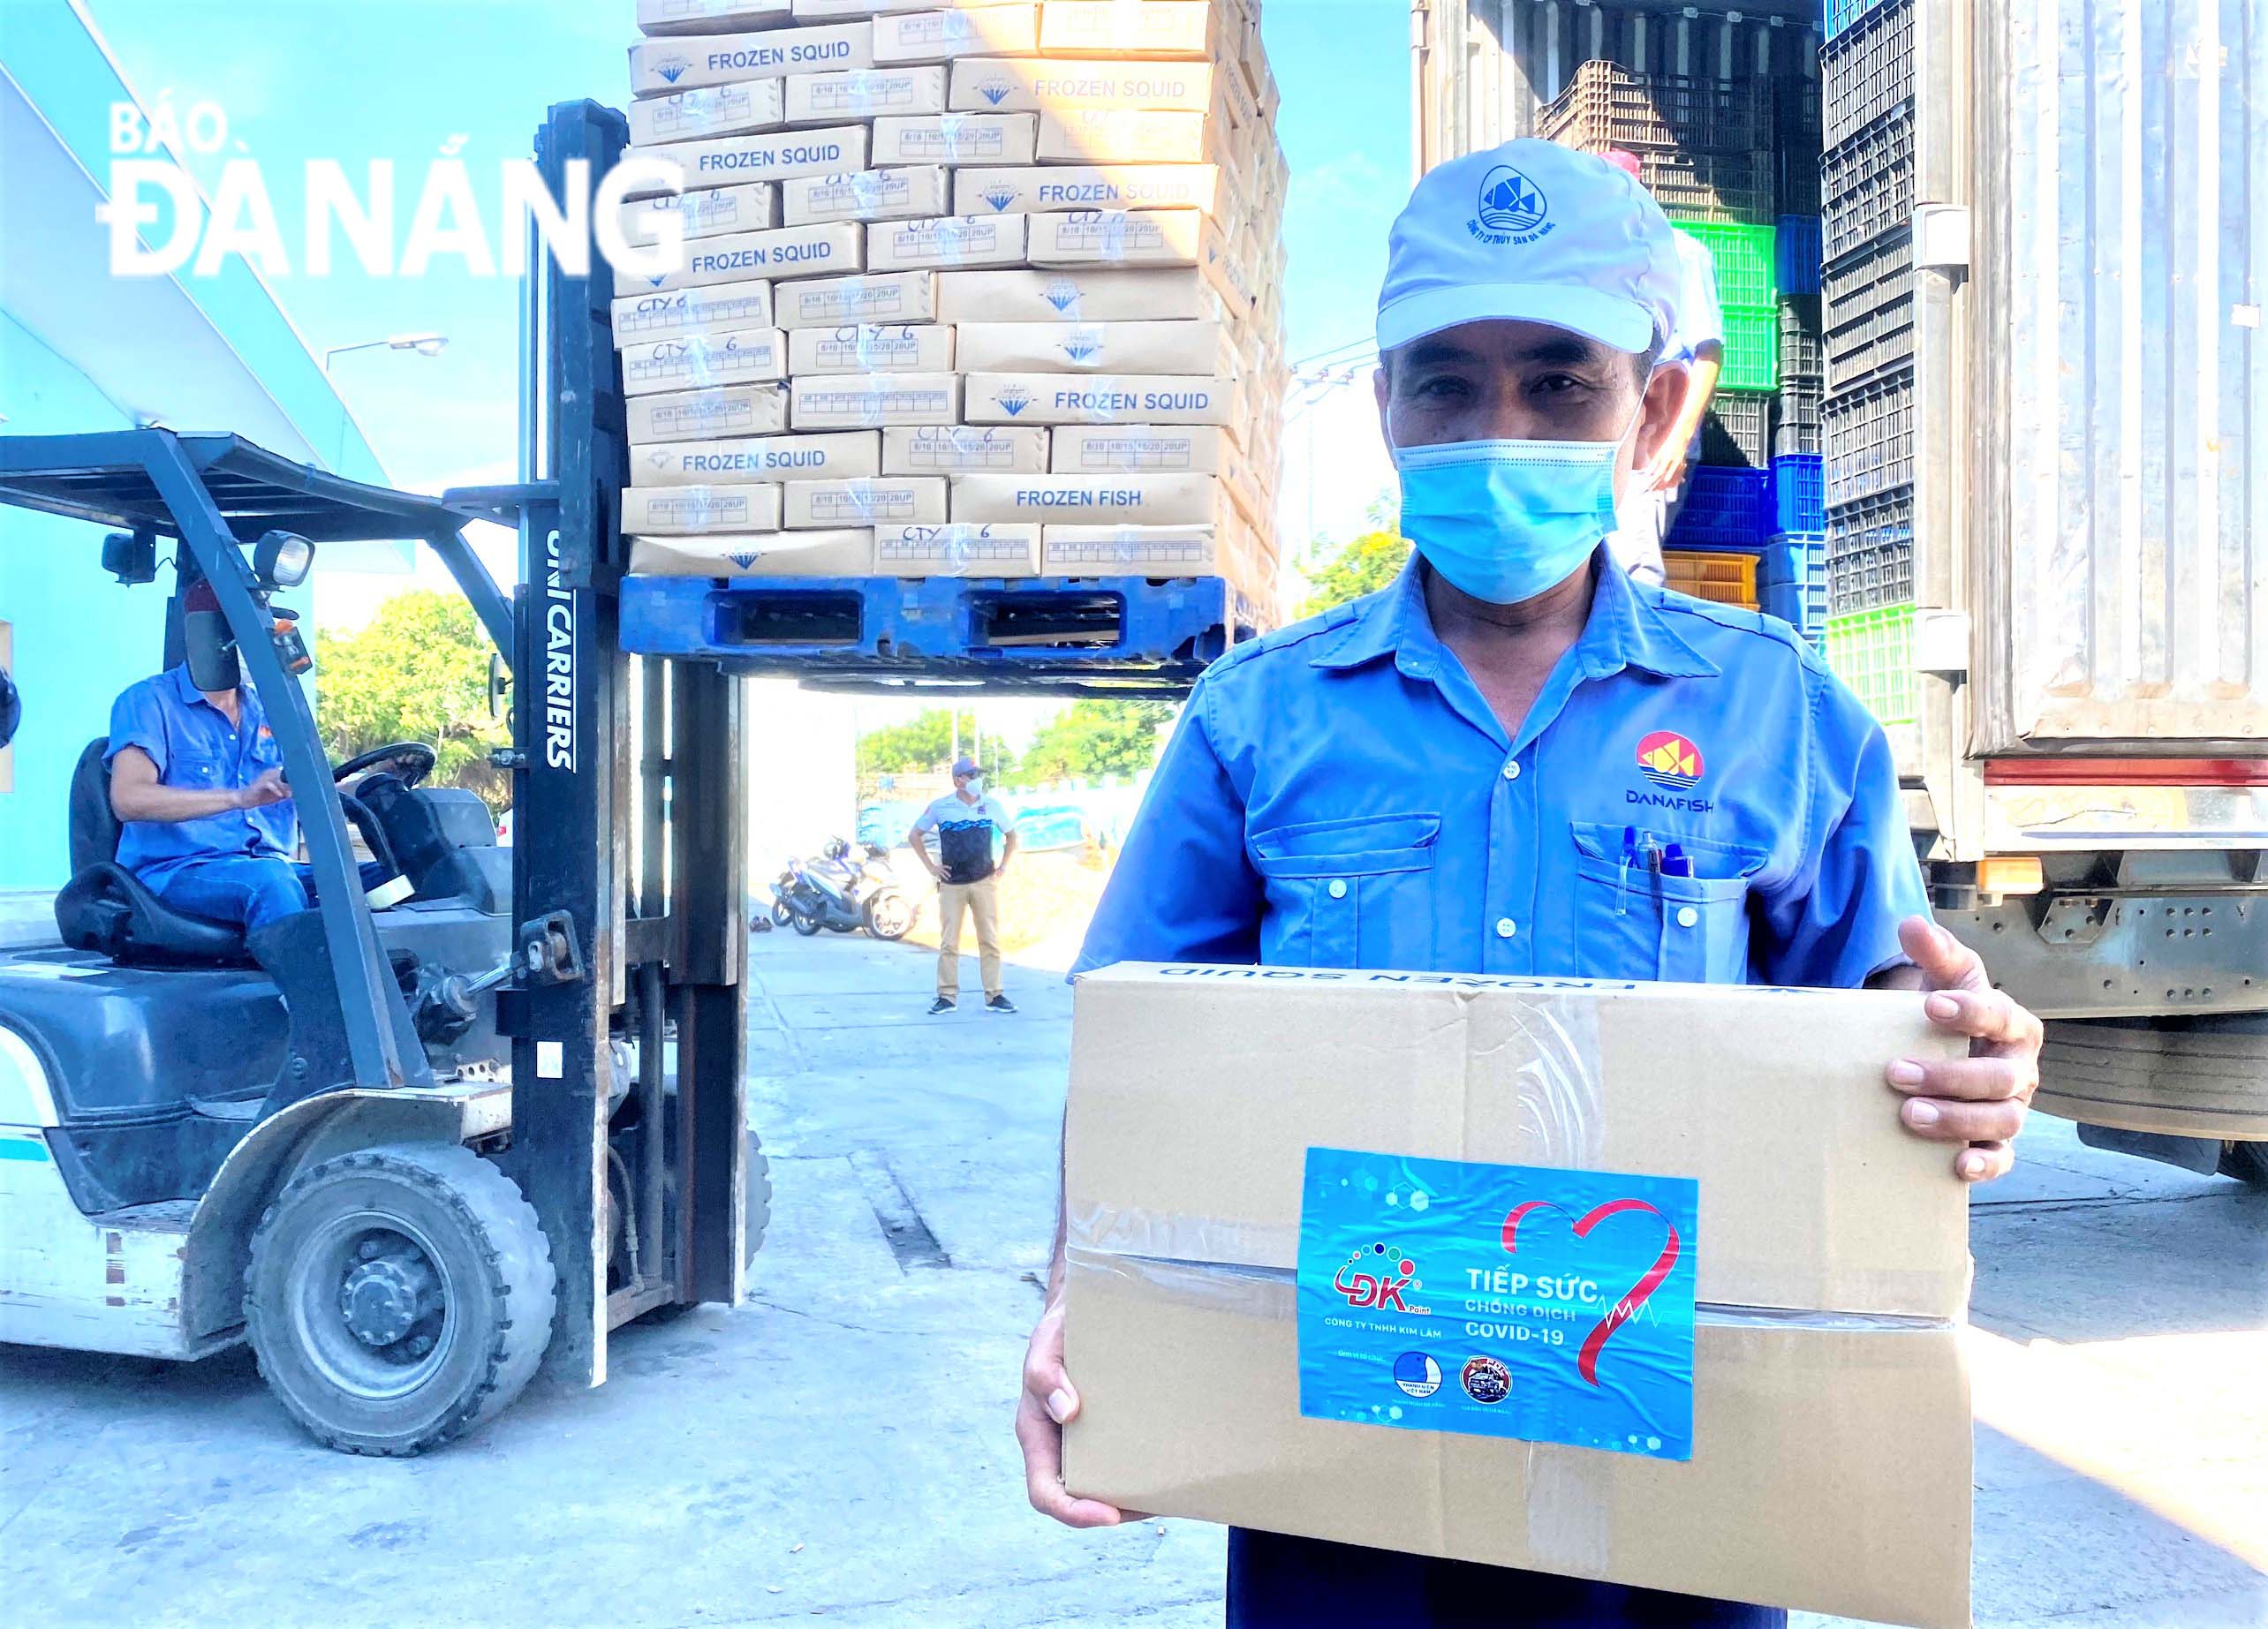 Trên mỗi thùng cá là lời nhắn nhủ từ thành phố Đà Nẵng đến nhân dân miền Nam, mong Thành phố Hồ Chí Minh sớm vượt qua dịch bệnh. Ảnh: LAM PHƯƠNG